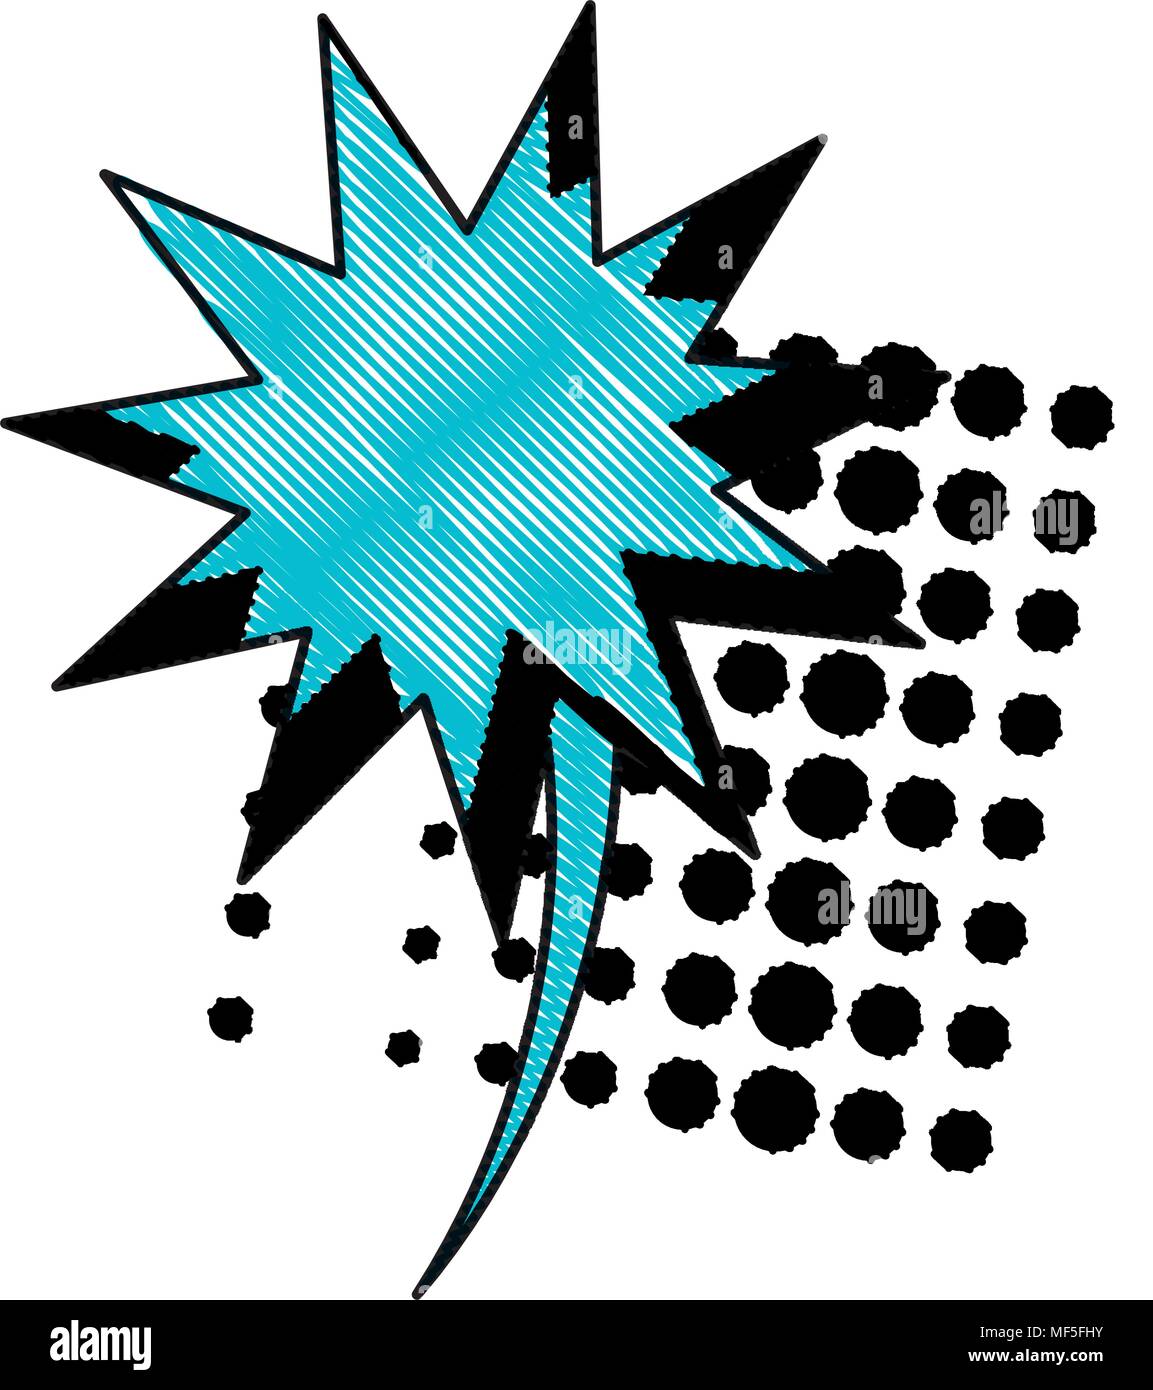 Espressione di burst, pop art style design su sfondo bianco, illustrazione vettoriale Illustrazione Vettoriale